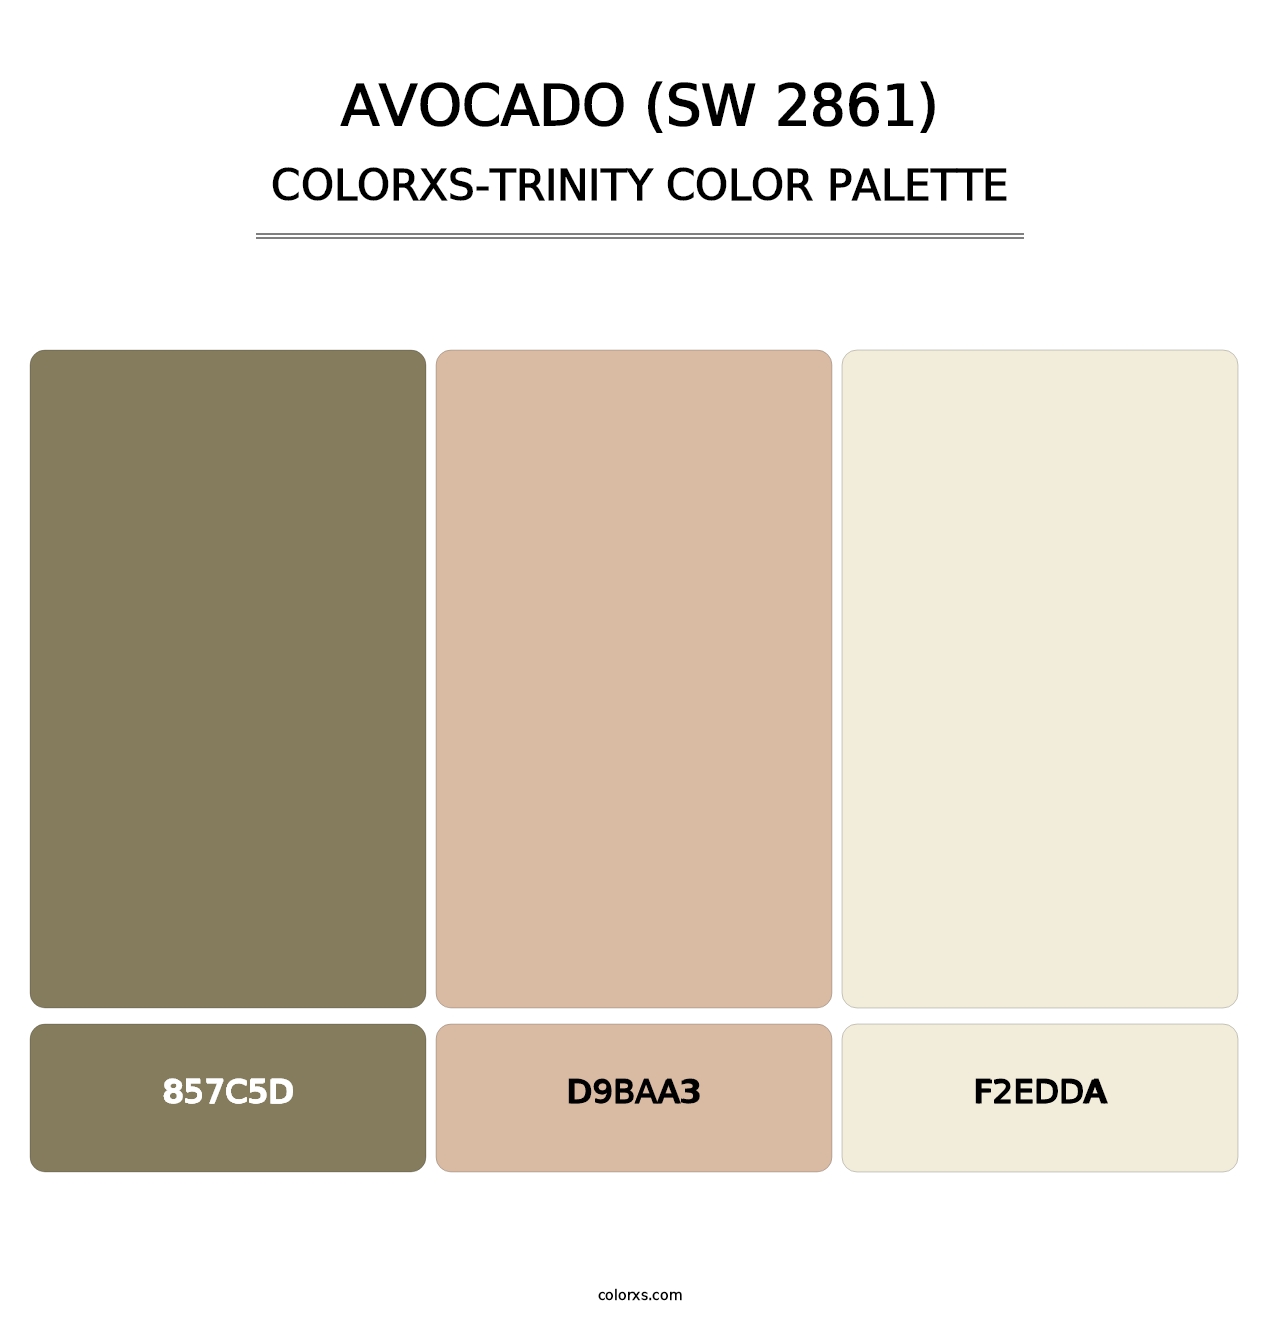 Avocado (SW 2861) - Colorxs Trinity Palette